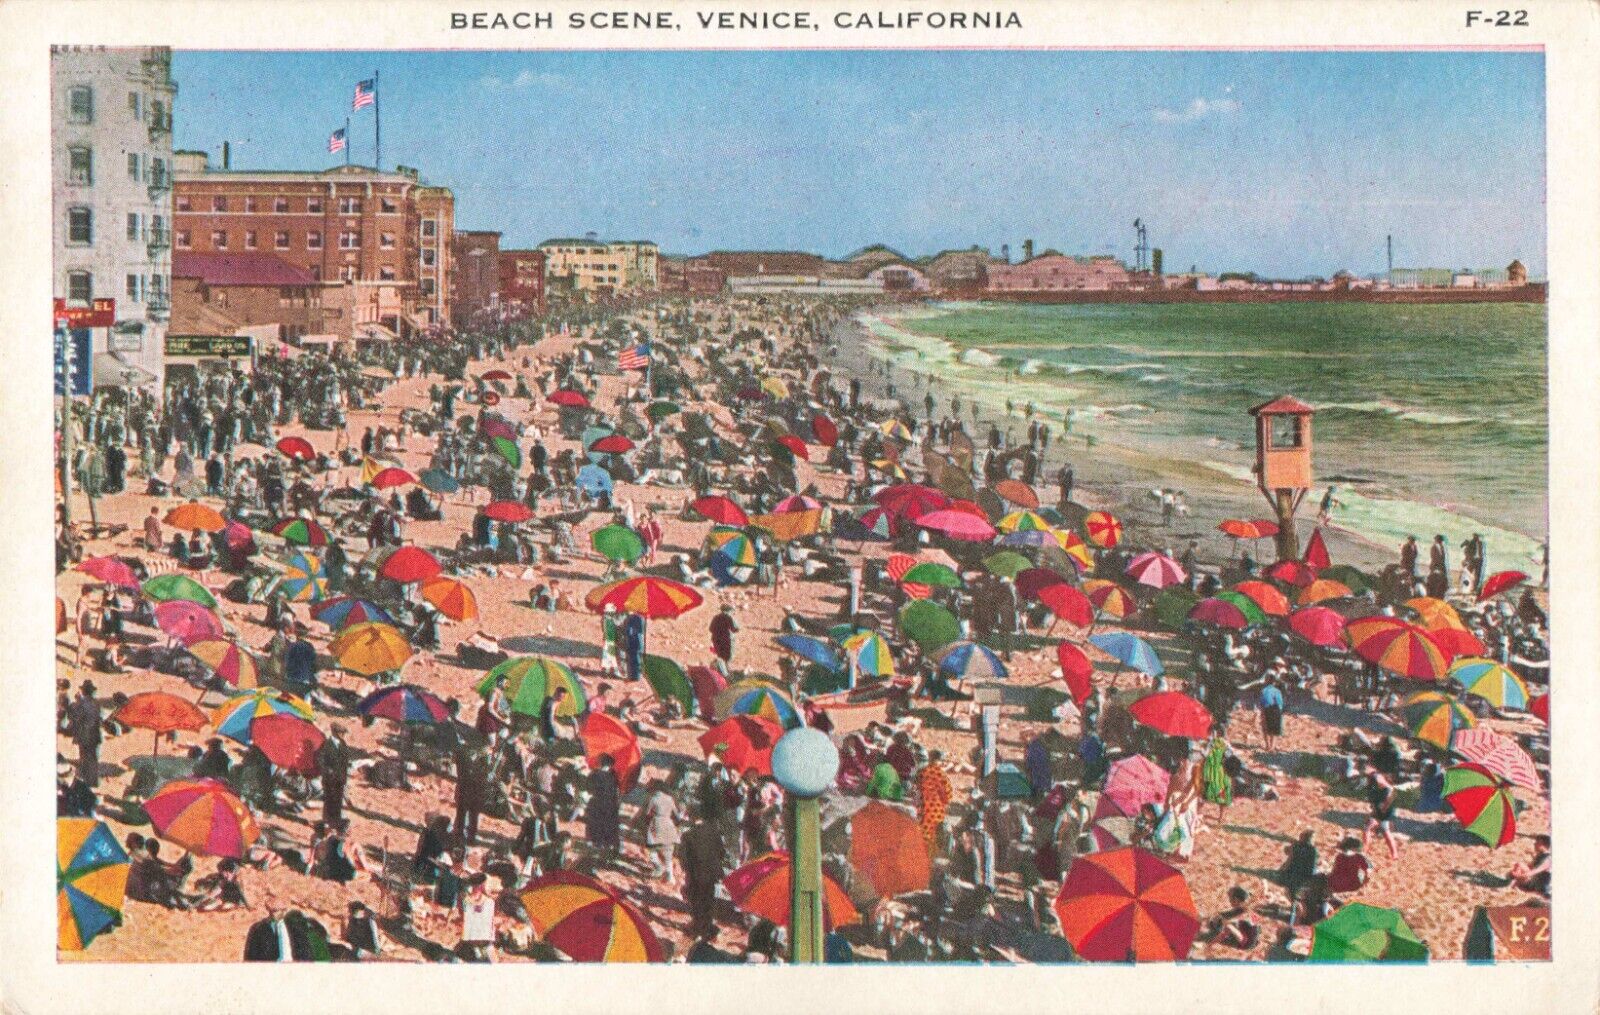 Venice California, Beach Scene Sunbathers Umbrellas, Vintage Postcard